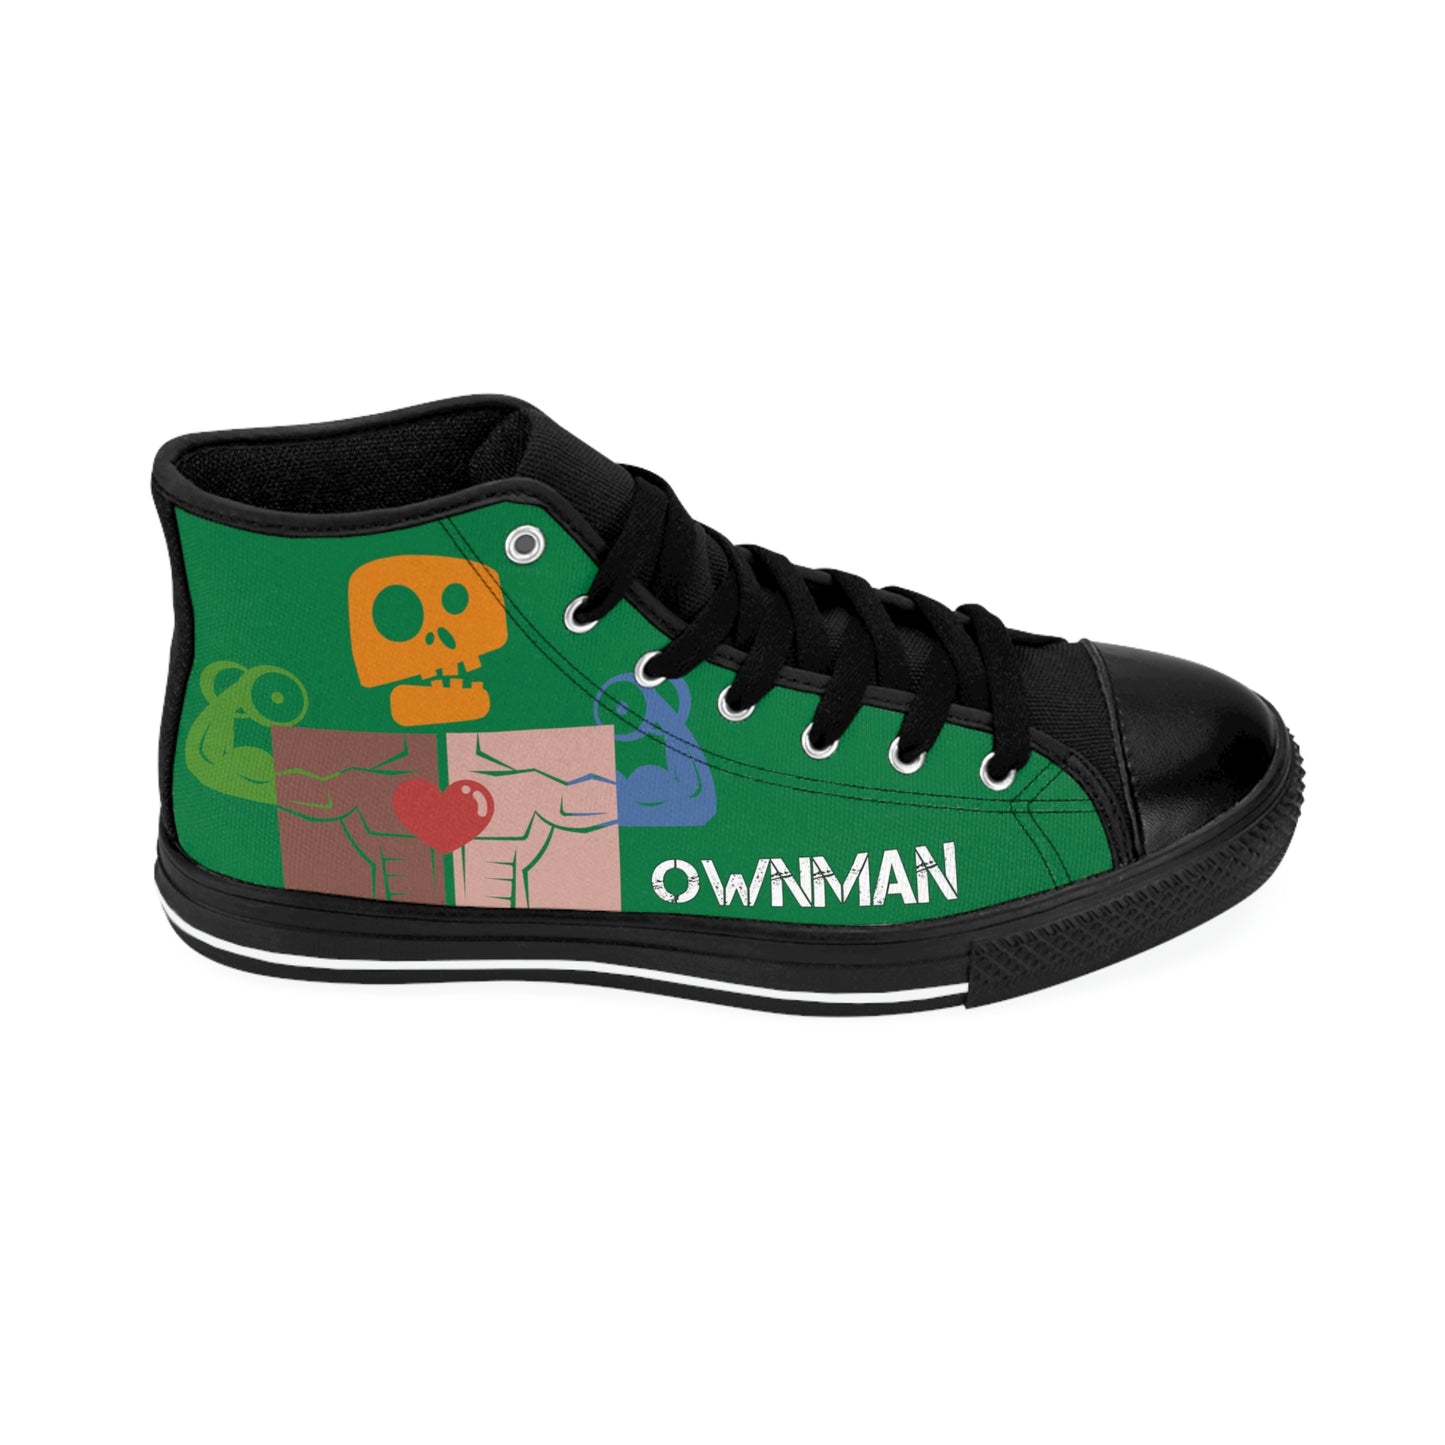 OWN MAN - Men's Classic Sneakers